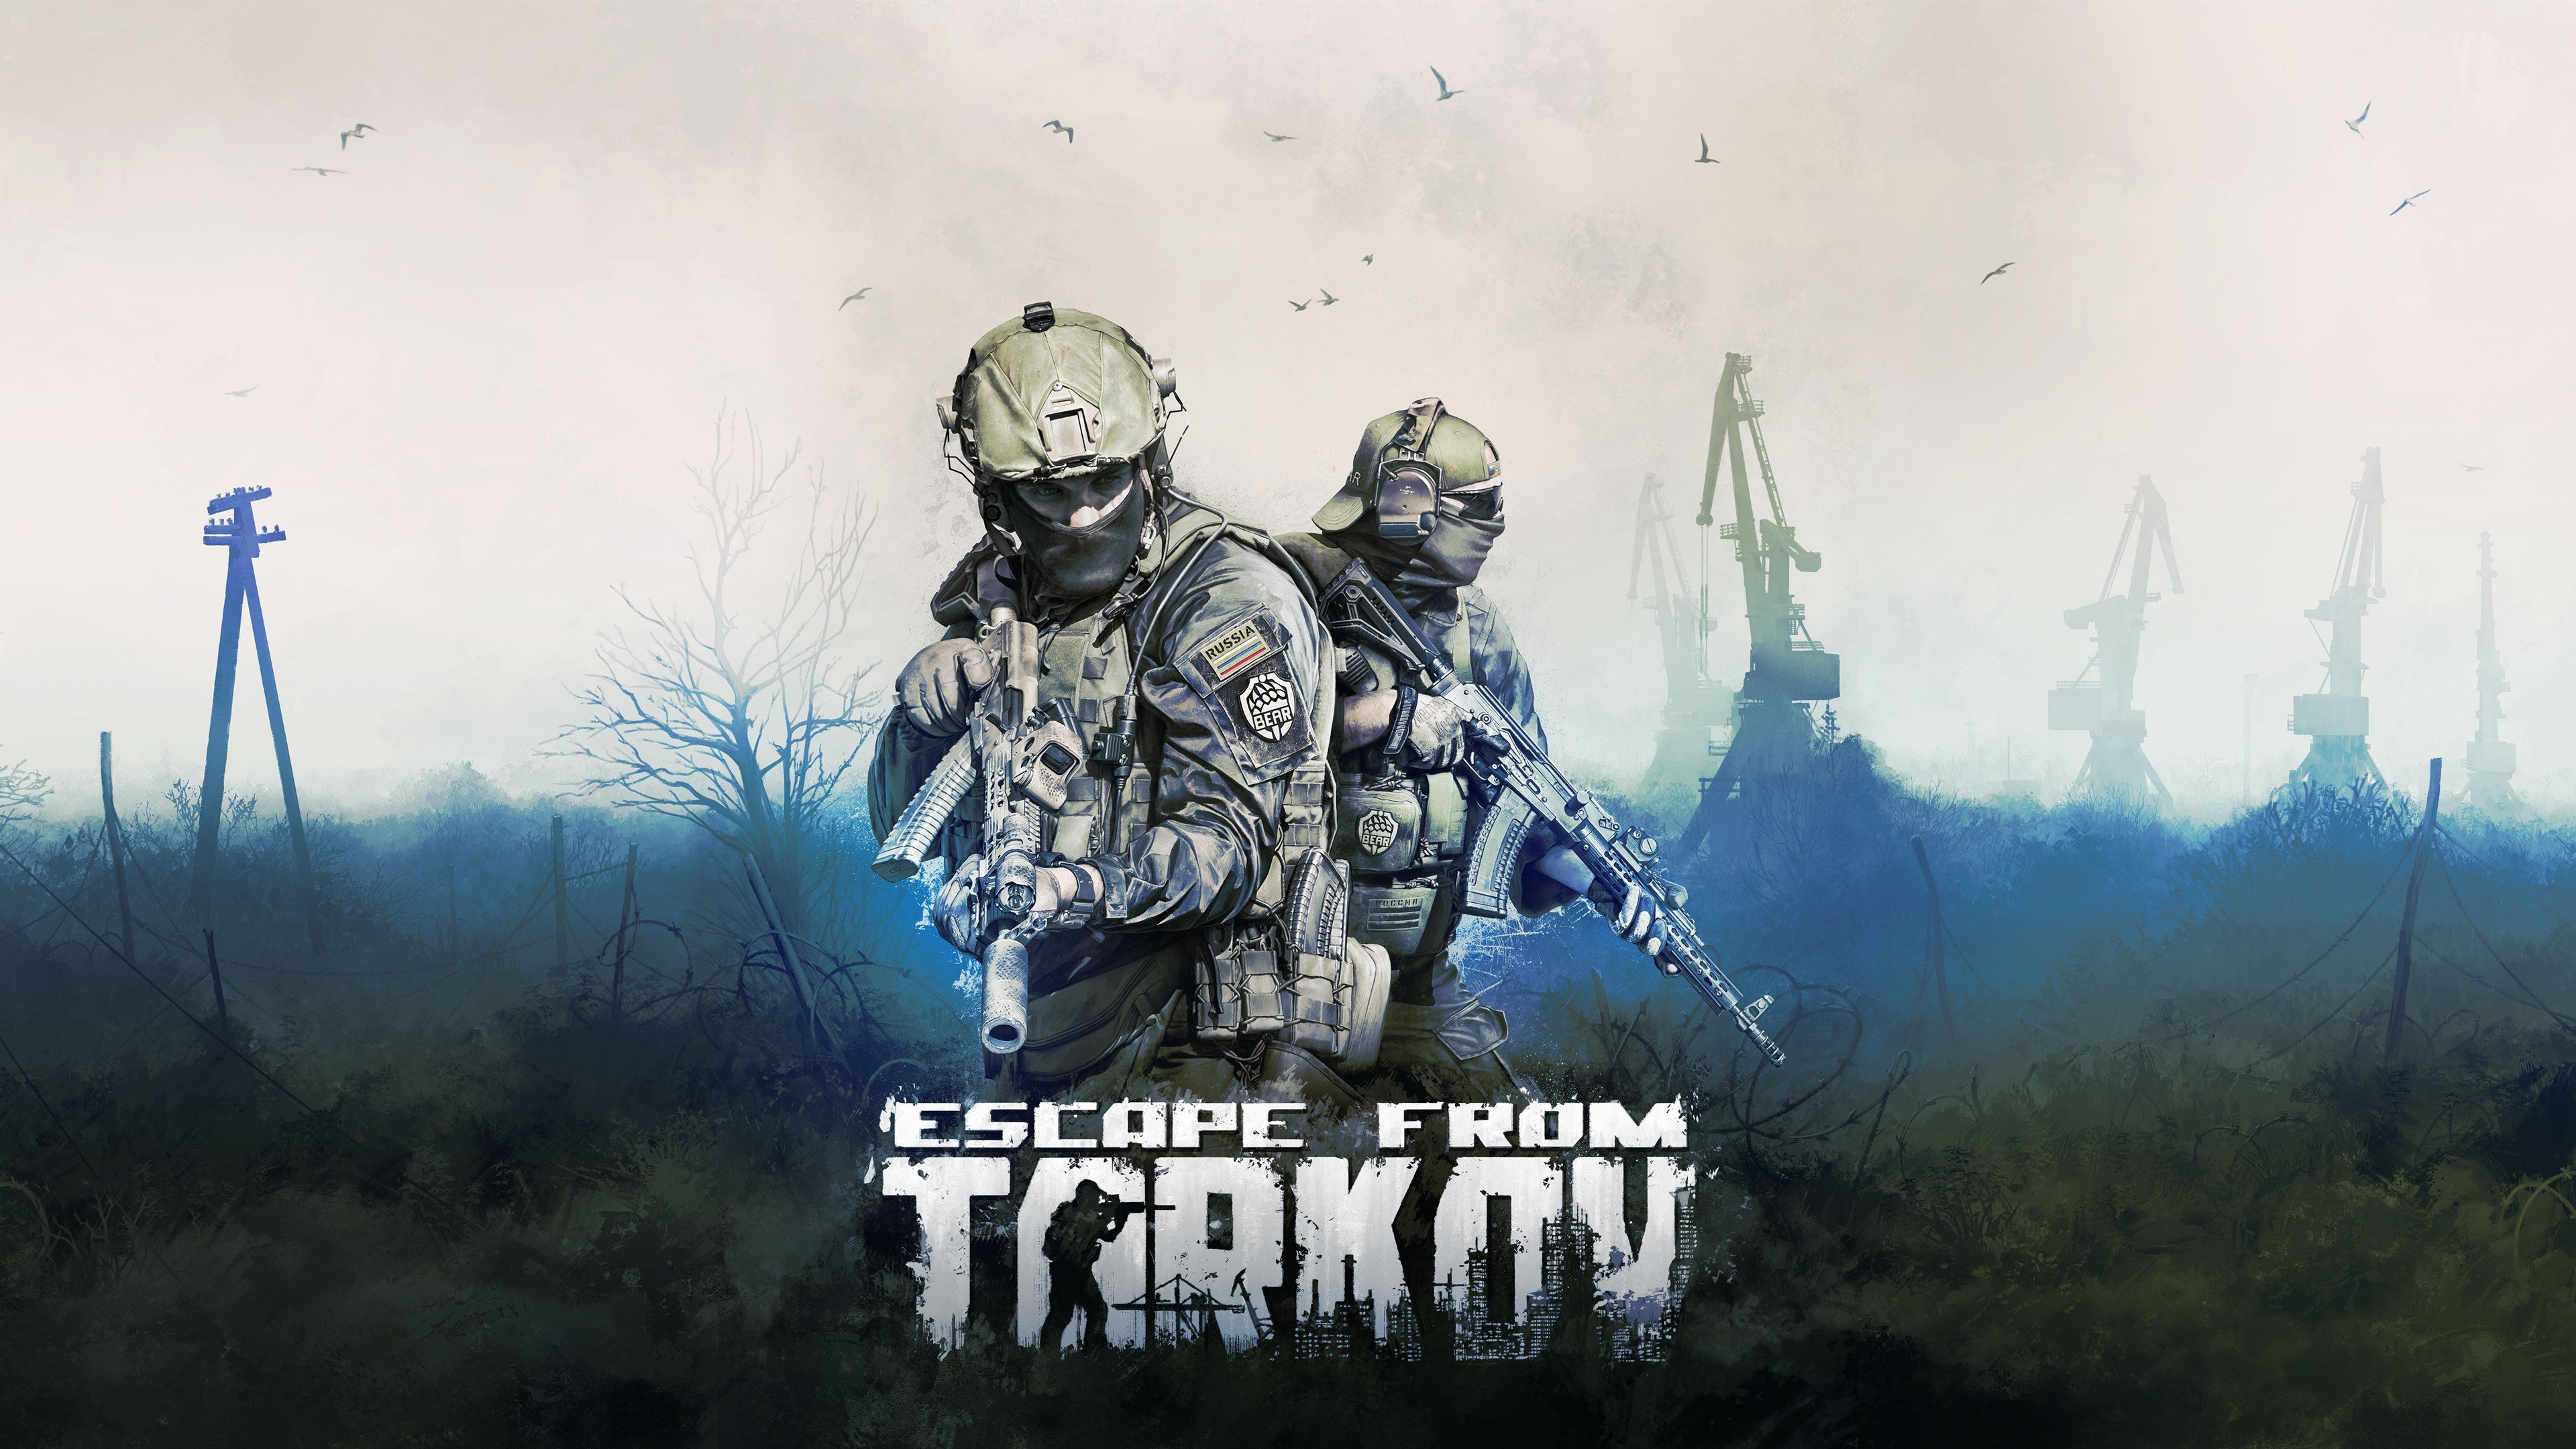 Wallpaper Escape from Tarkov, video game 3840x2160 UHD 4K